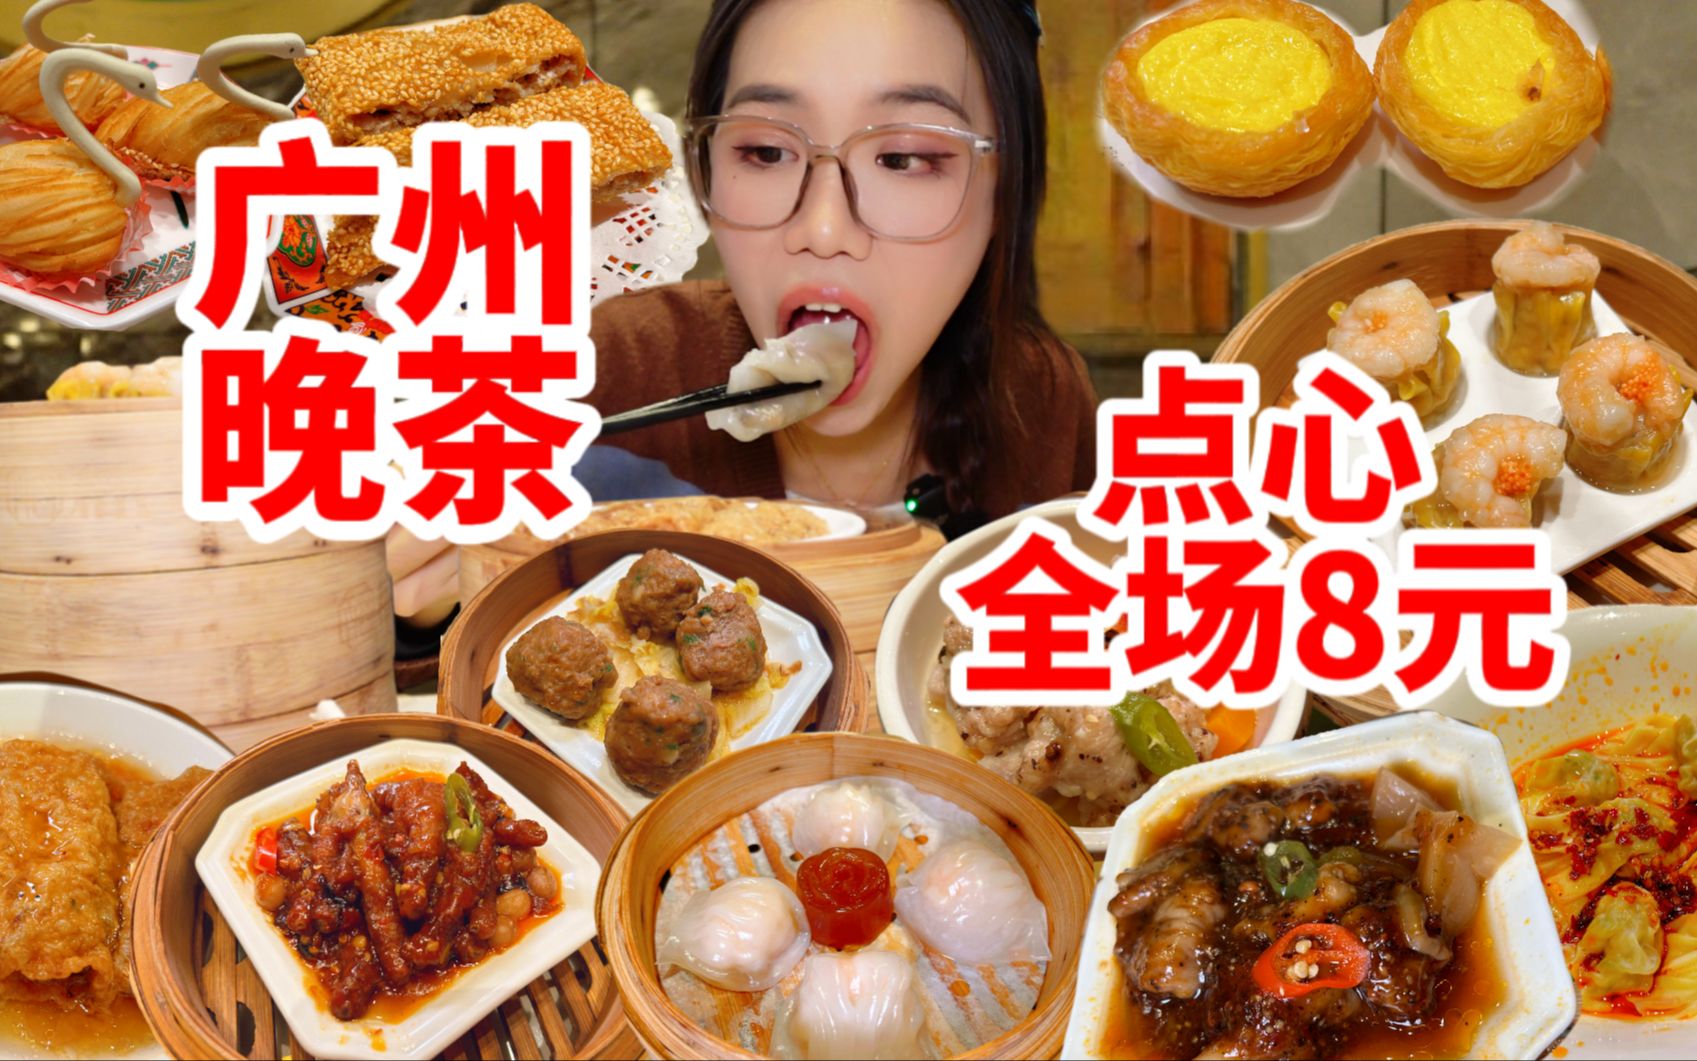 广州全场8元的晚茶点心，虾饺烧卖凤爪不限量！狂点18笼居然才100多，吃出自助的感觉。